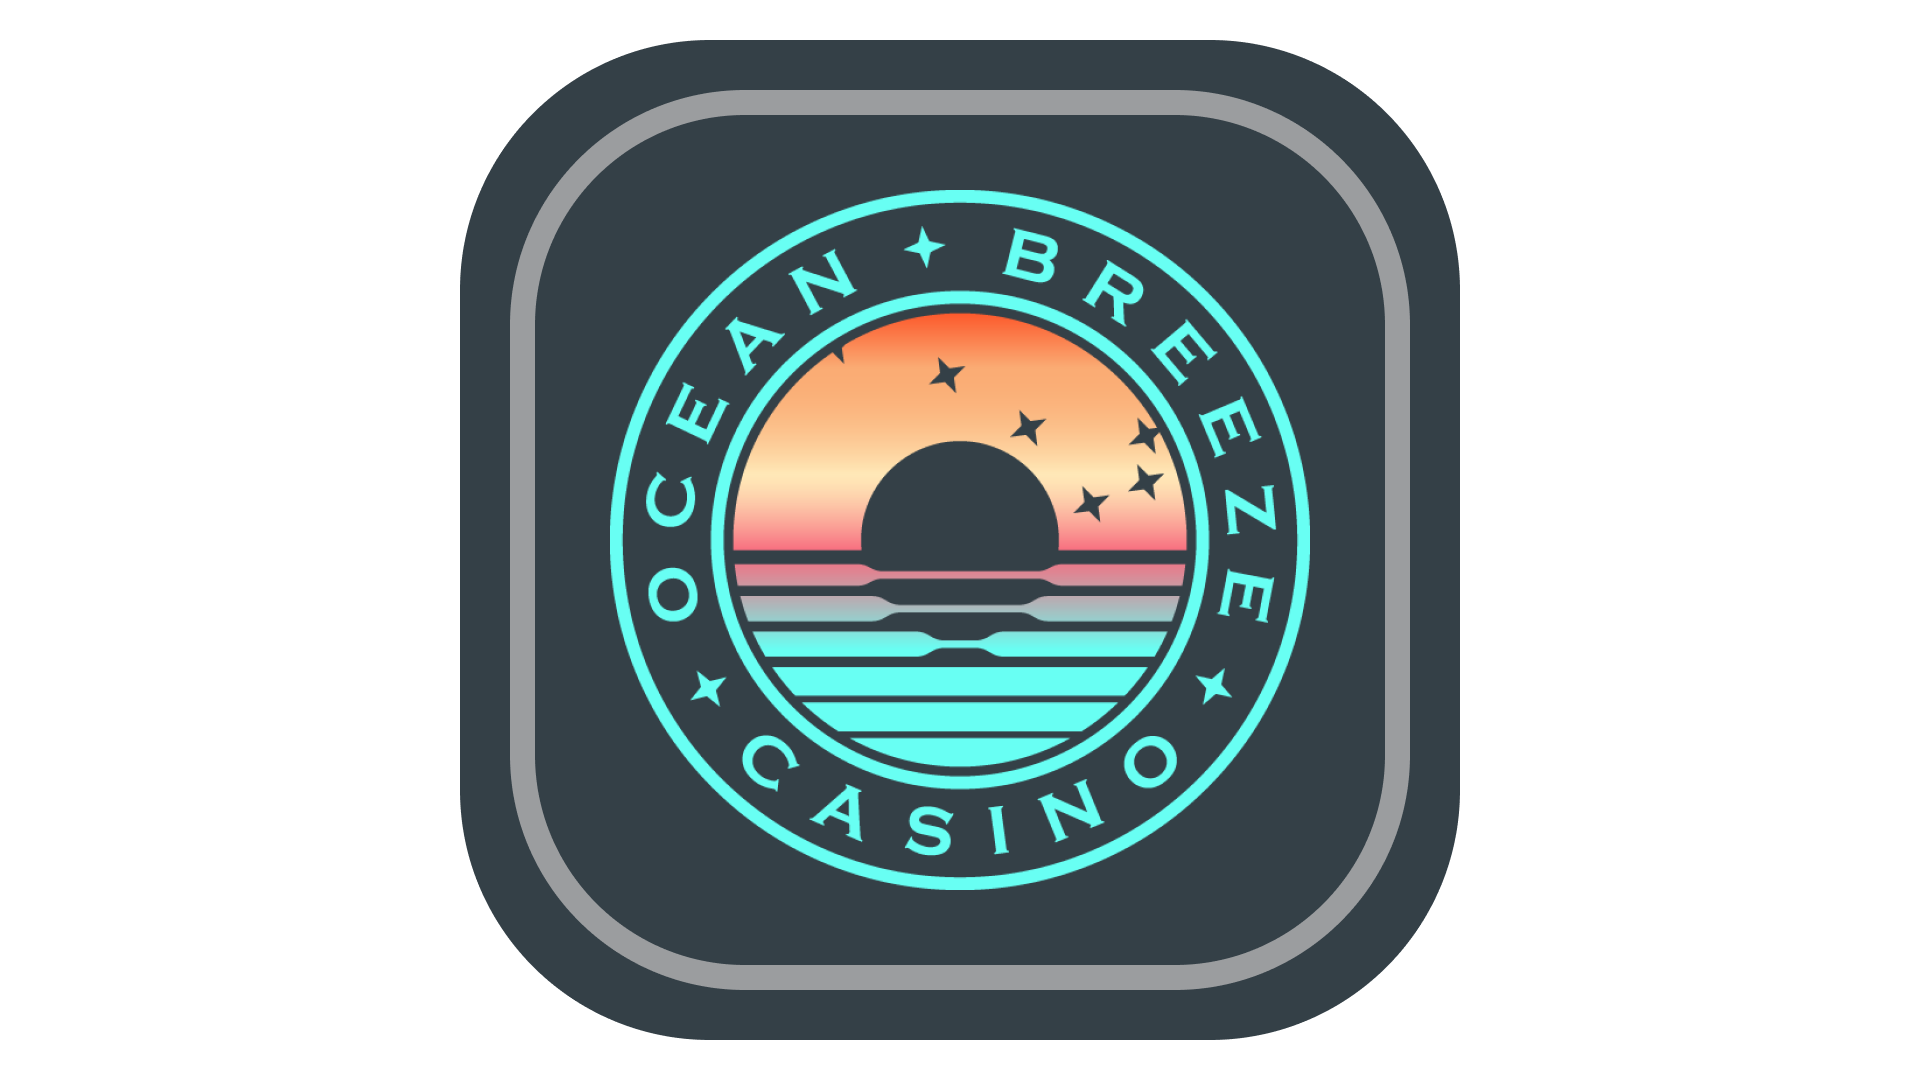 Ocean Breeze Casino